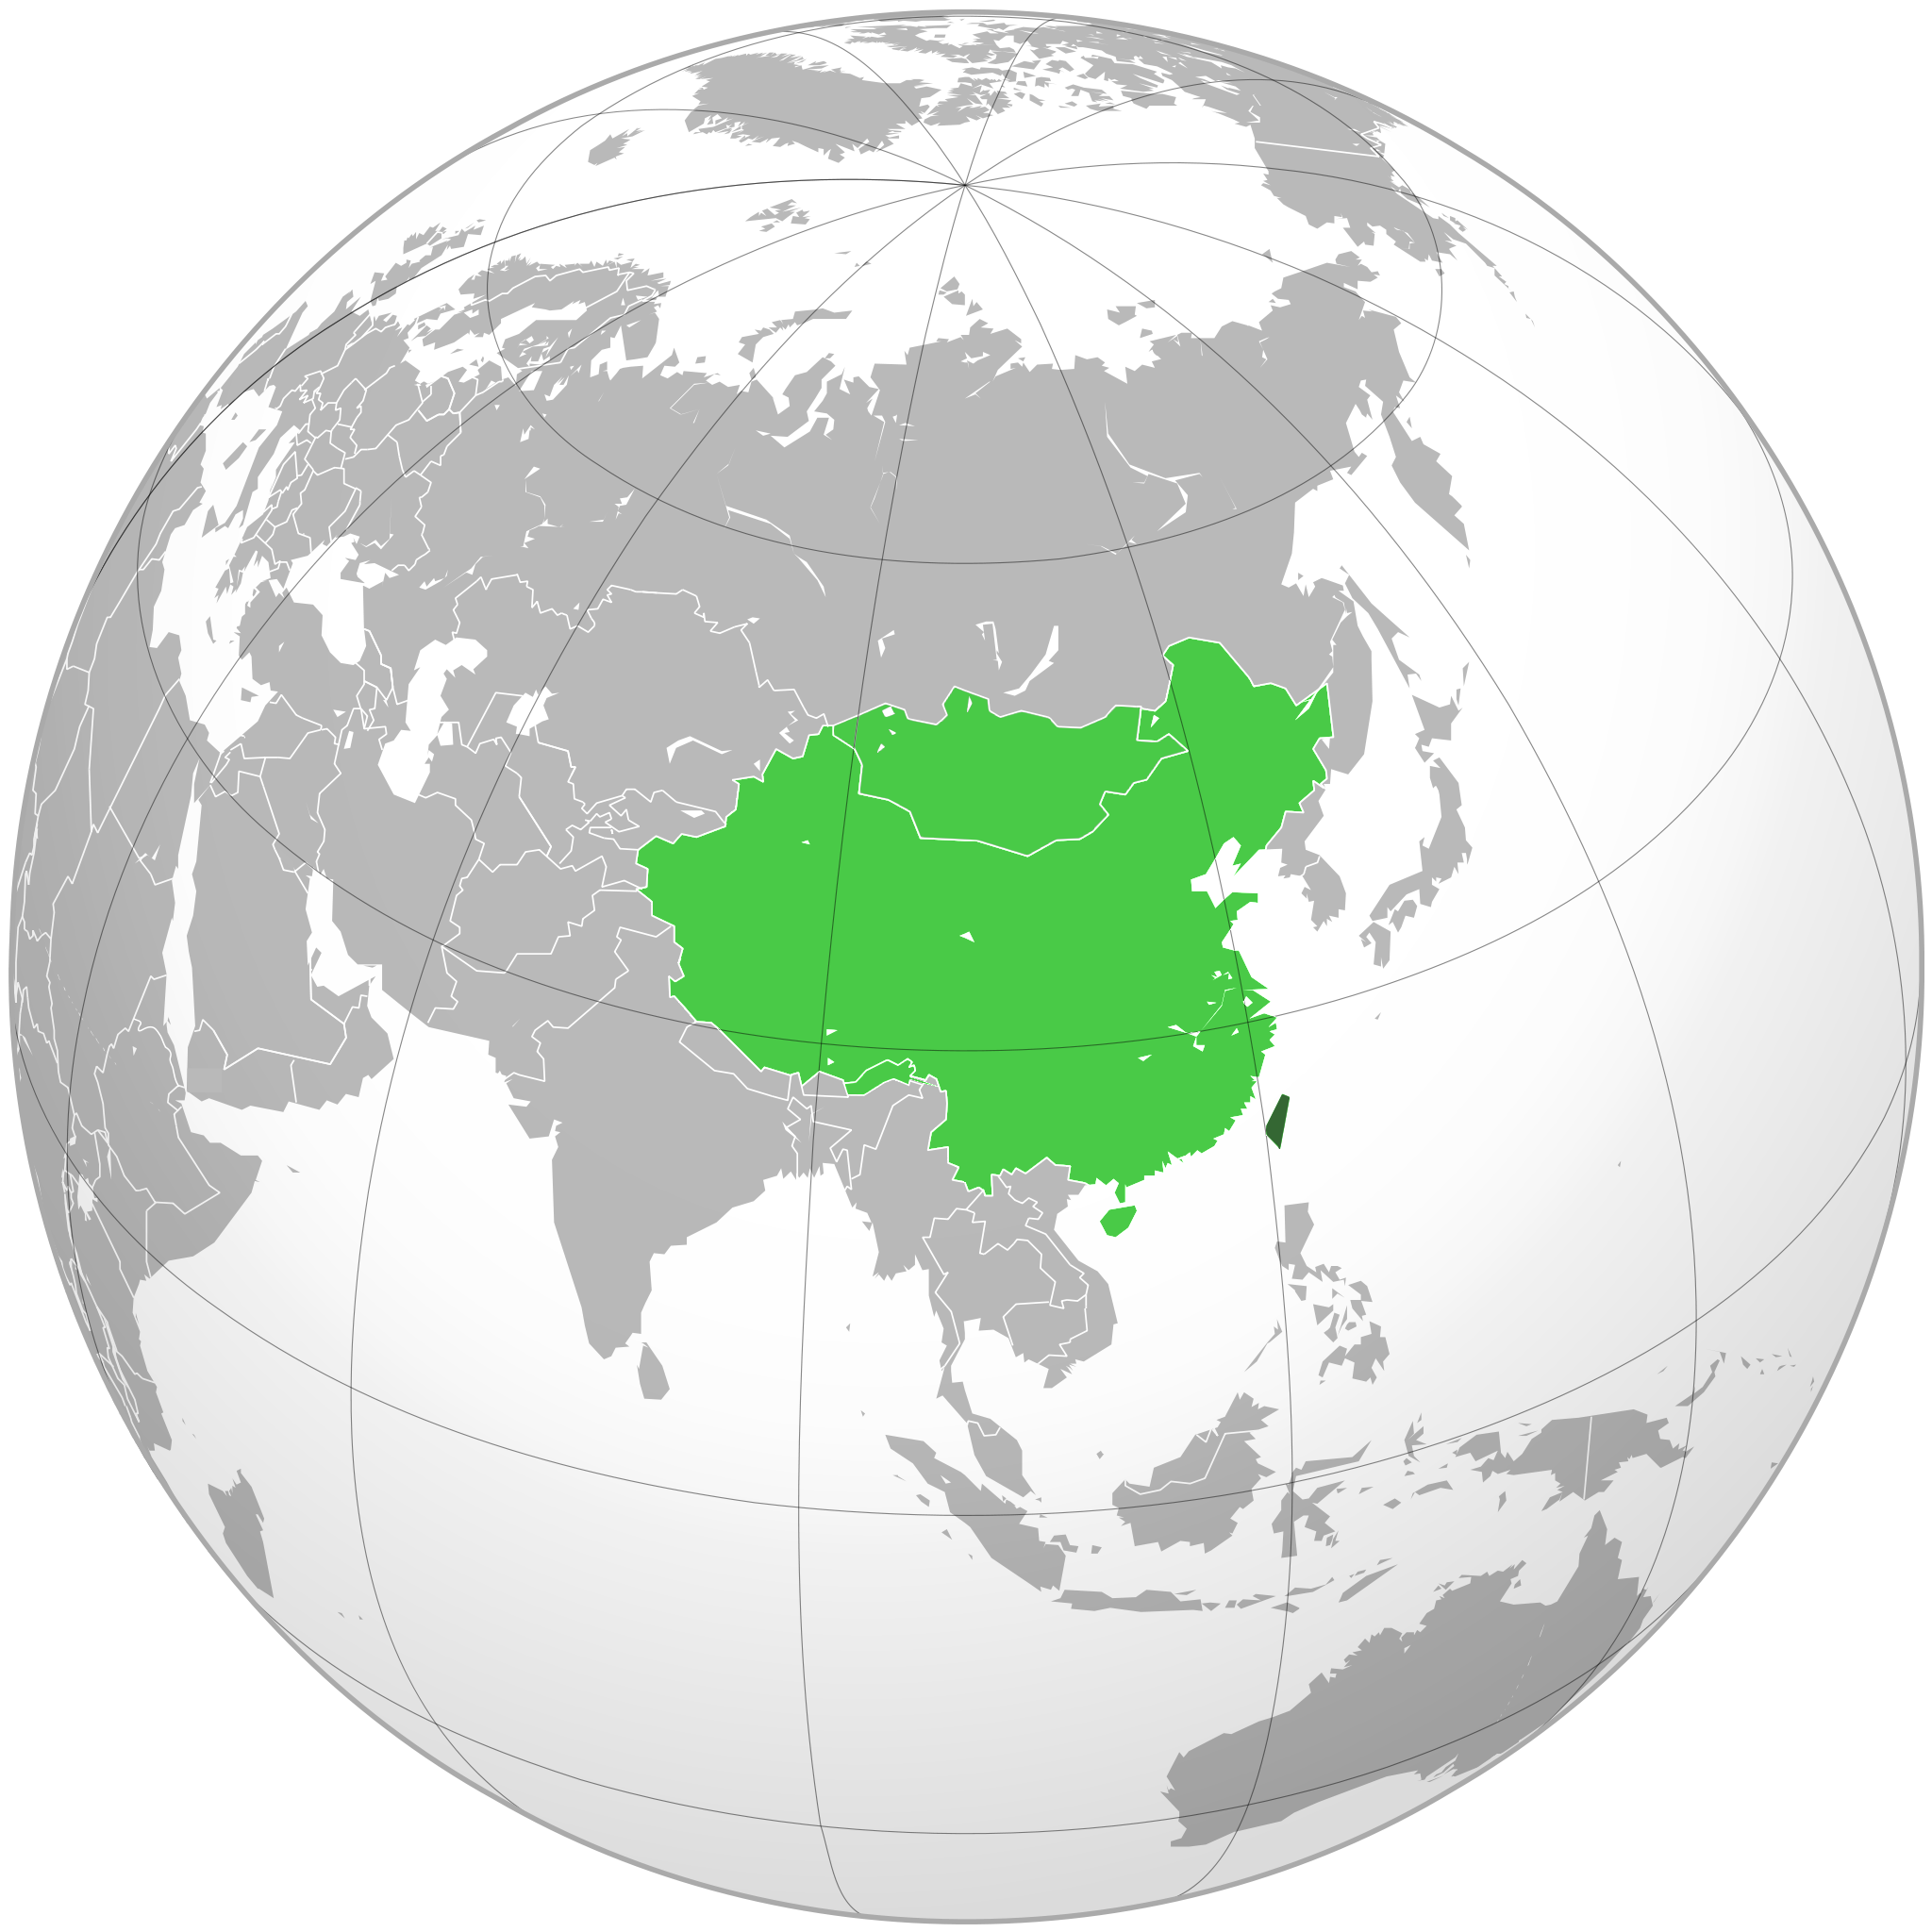 Taiwán frente a China en el mapa: la isla aparece en verde más oscuro.